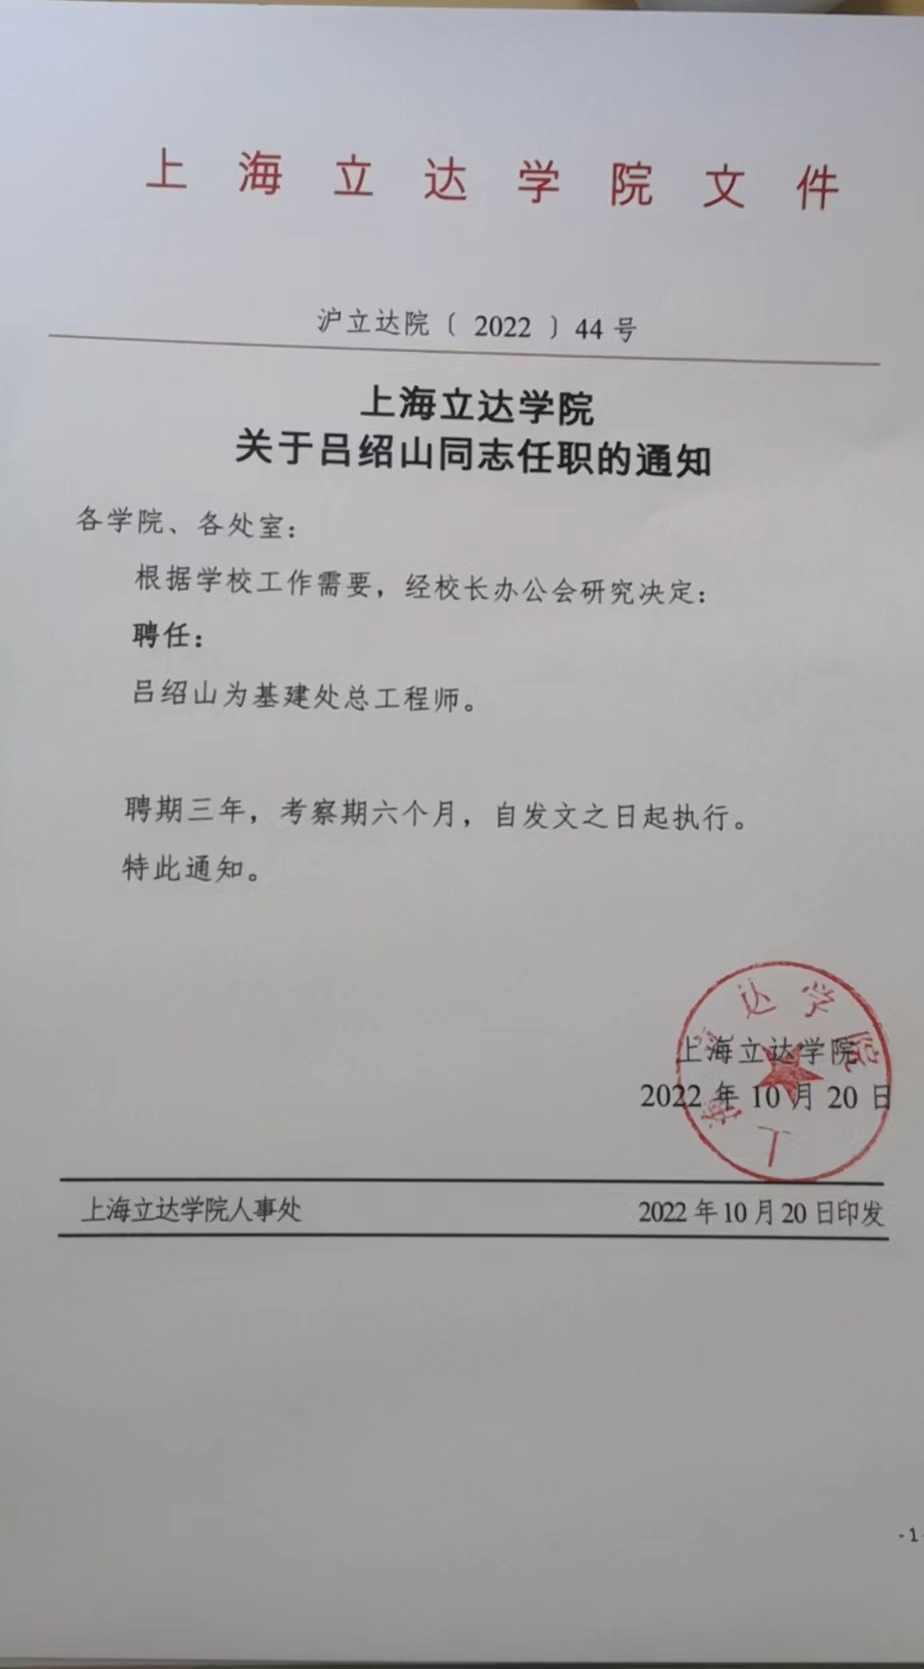 上海立达学院关于吕绍山同志任职的通知